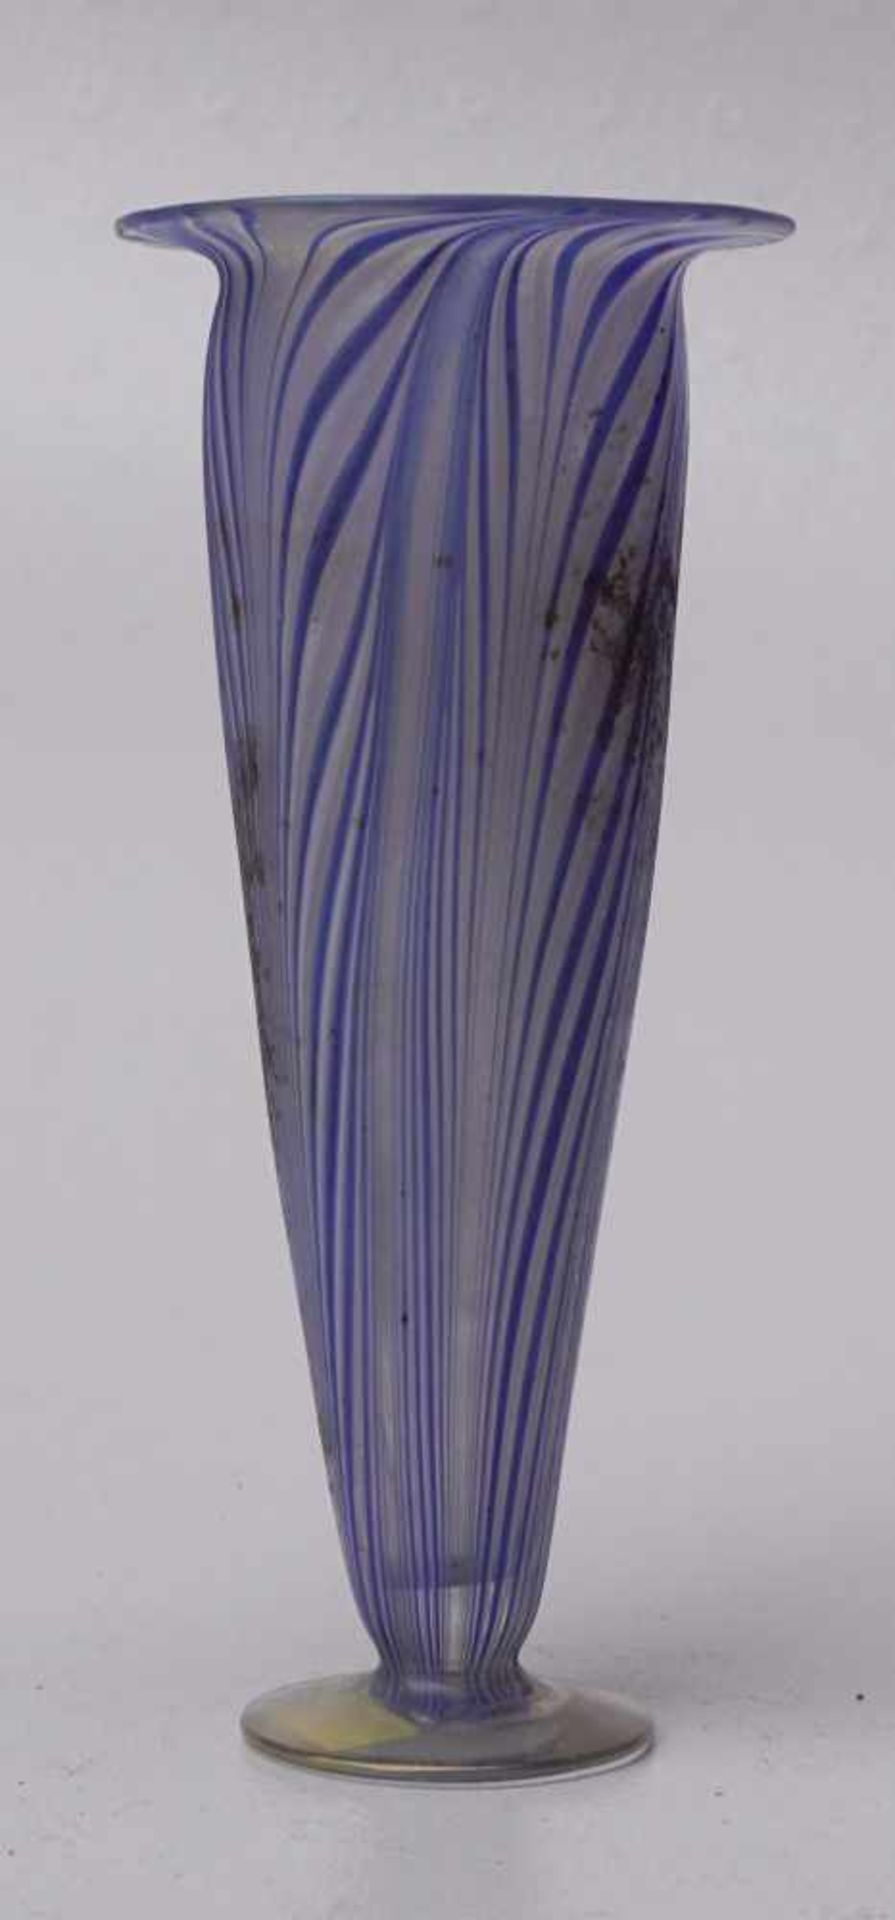 Antike Vase, Fadenglas, Italien, 18. Jhd.Farbloses Glas mit blauen, einegschmolzenen Fäden in - Bild 2 aus 3